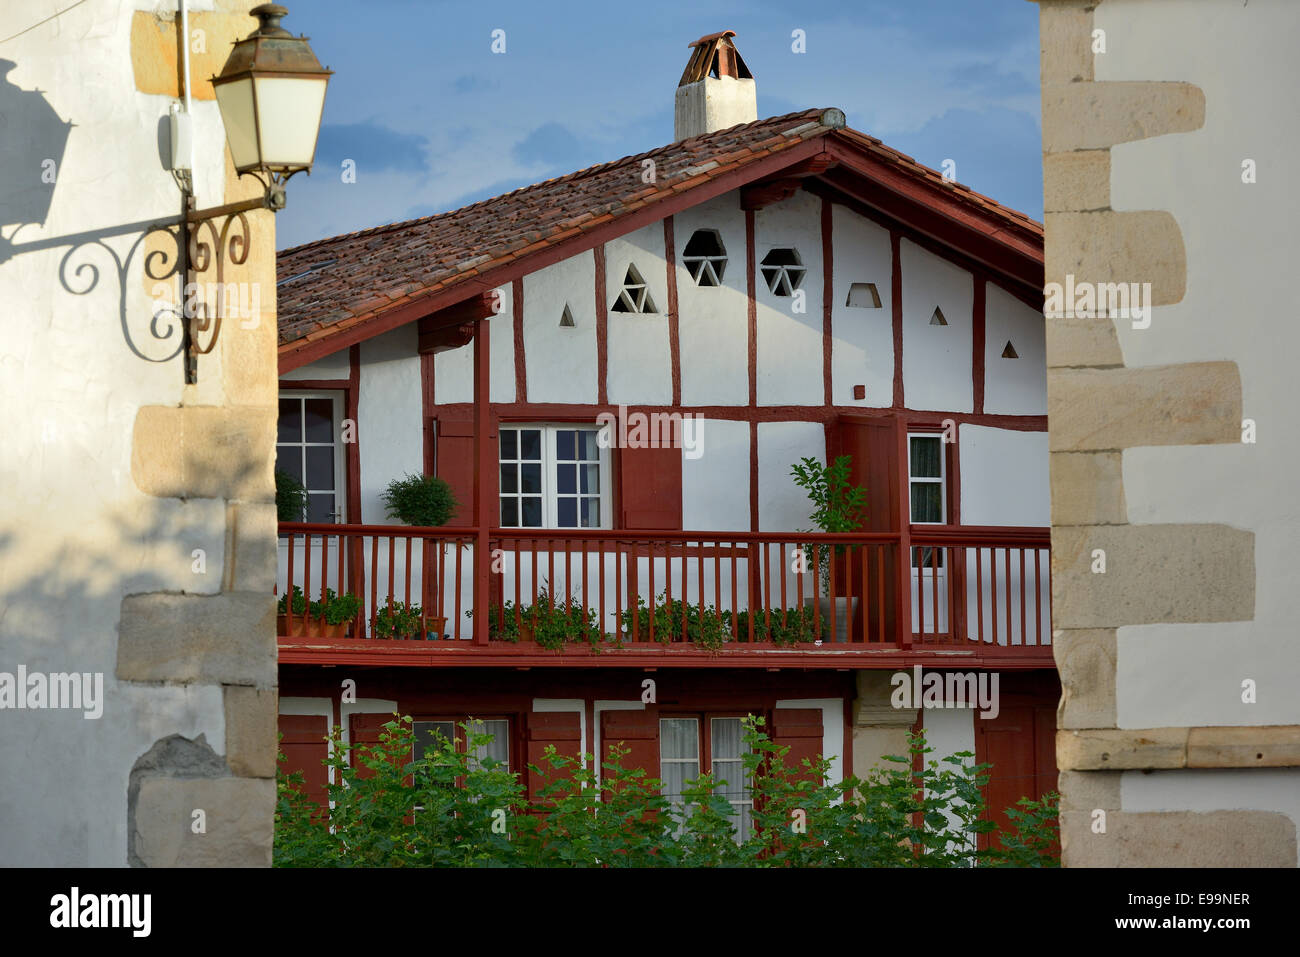 Francia, dei Pirenei atlantici, Pays Basque, Labord, Sare, tradizionale casa in legno Foto Stock